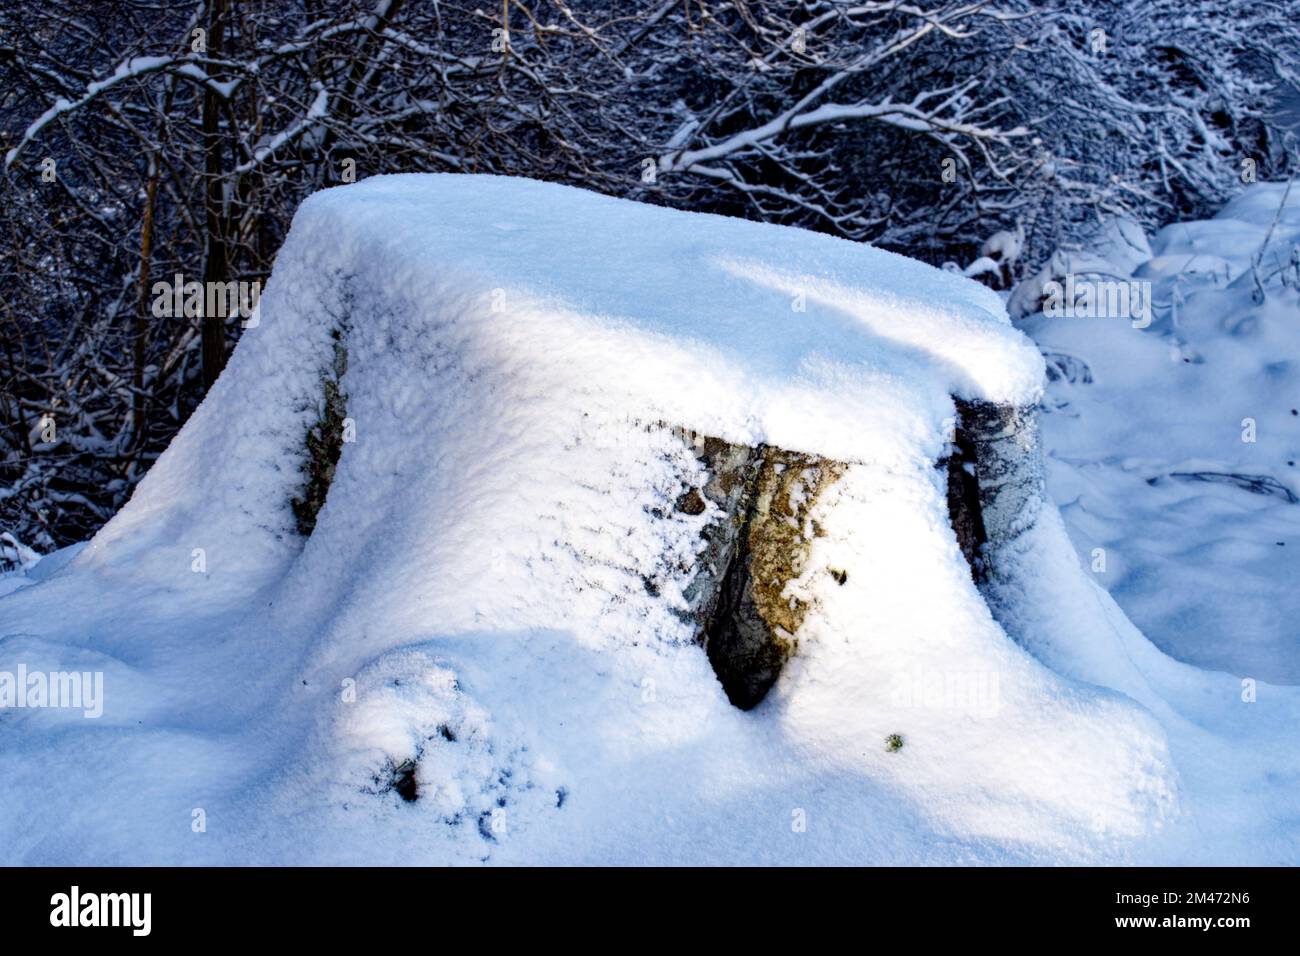 Hiver neige légère et profonde sur une vieille souche de hêtre Banque D'Images